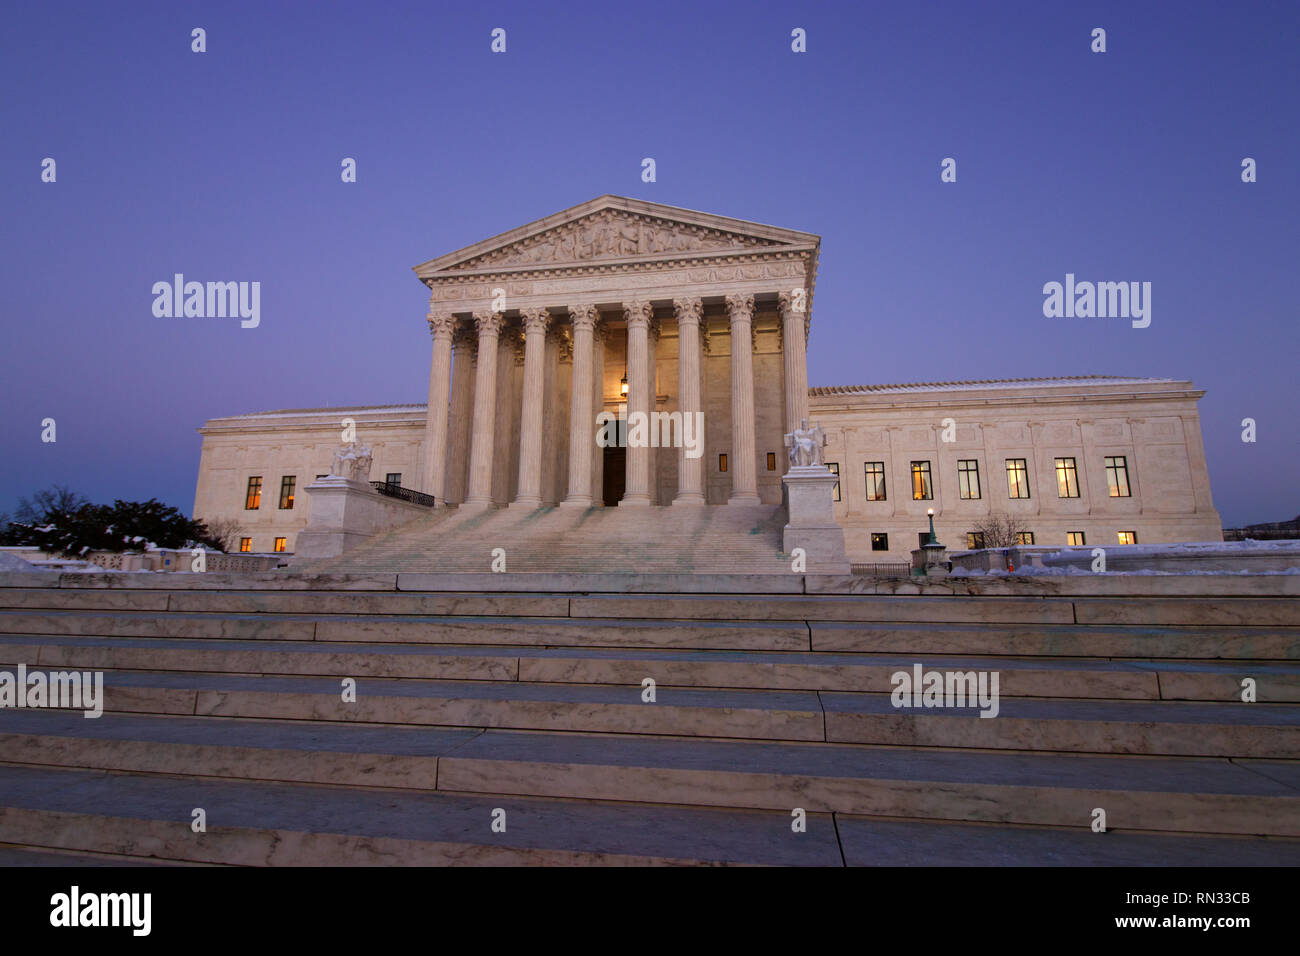 Der Oberste Gerichtshof in Washington DC USA winter Stockfoto